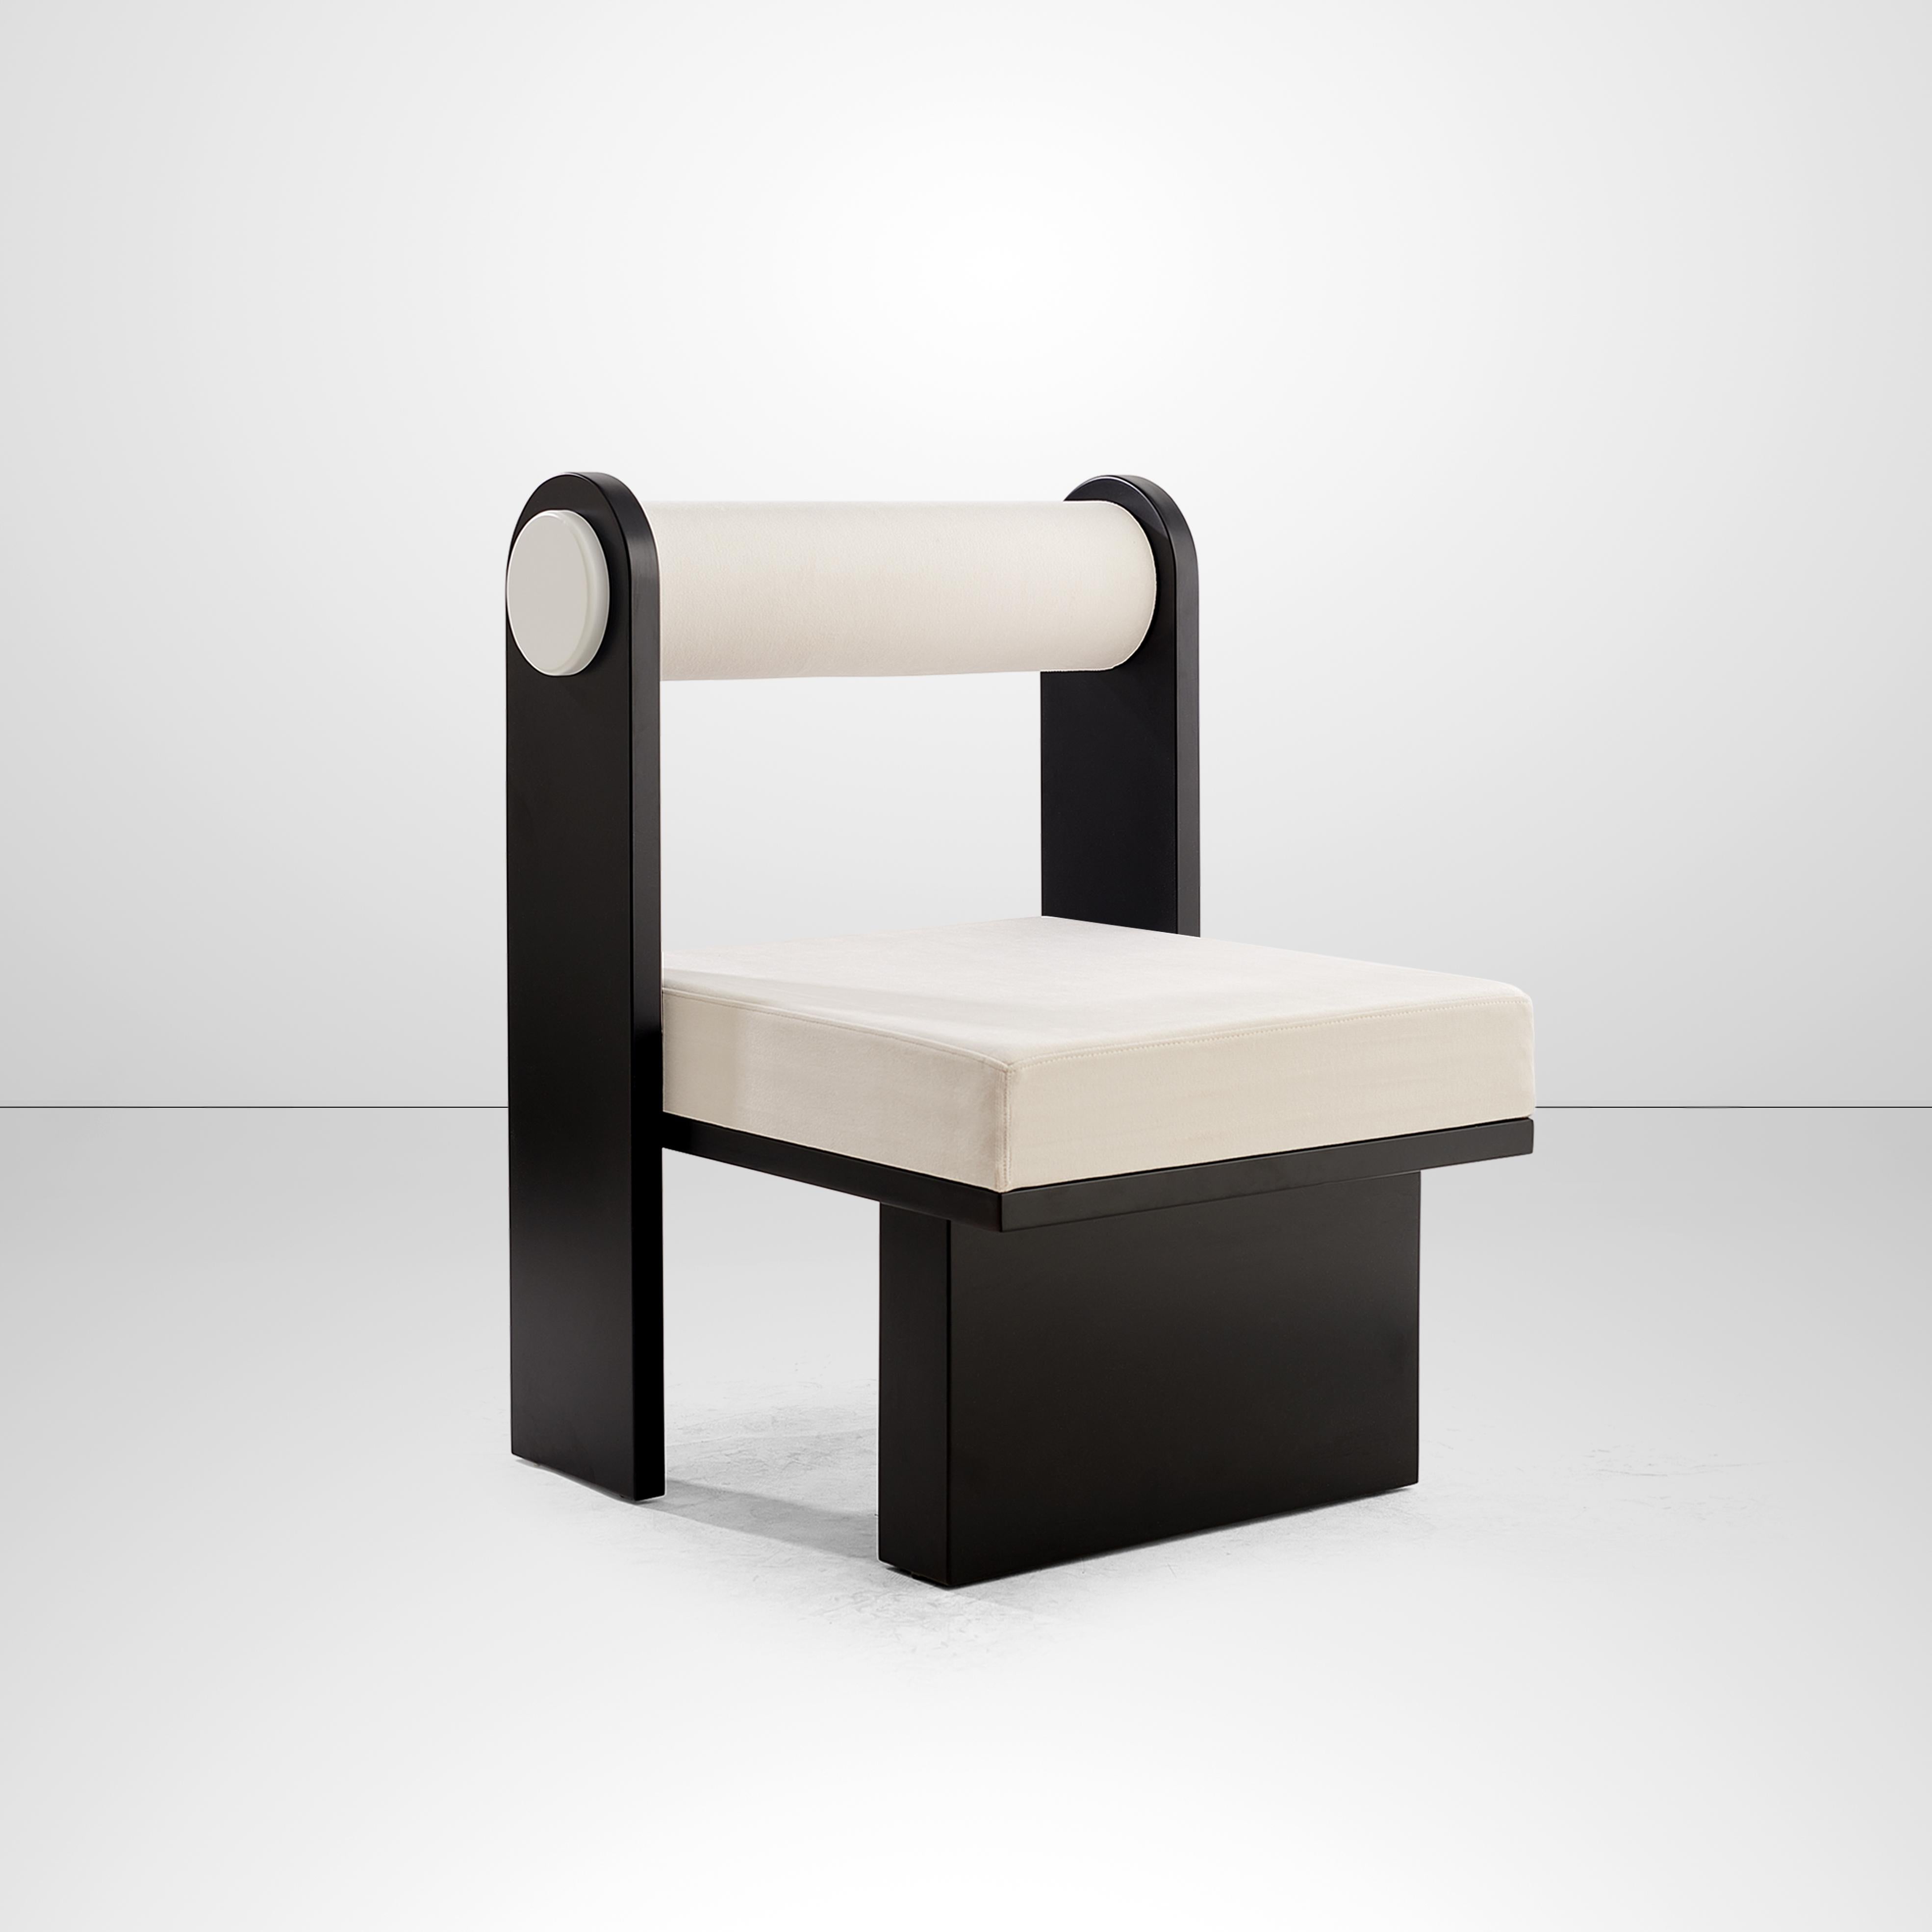 Chaise longue Panda de Melis Tatlicibasi 
Matériaux : Revêtement en velours blanc, chêne naturel laqué.
Dimensions : L 55 x P 65 x H 85 cm

La collection Panda est une œuvre minimaliste avec quelques touches orientales. Inspiré par les